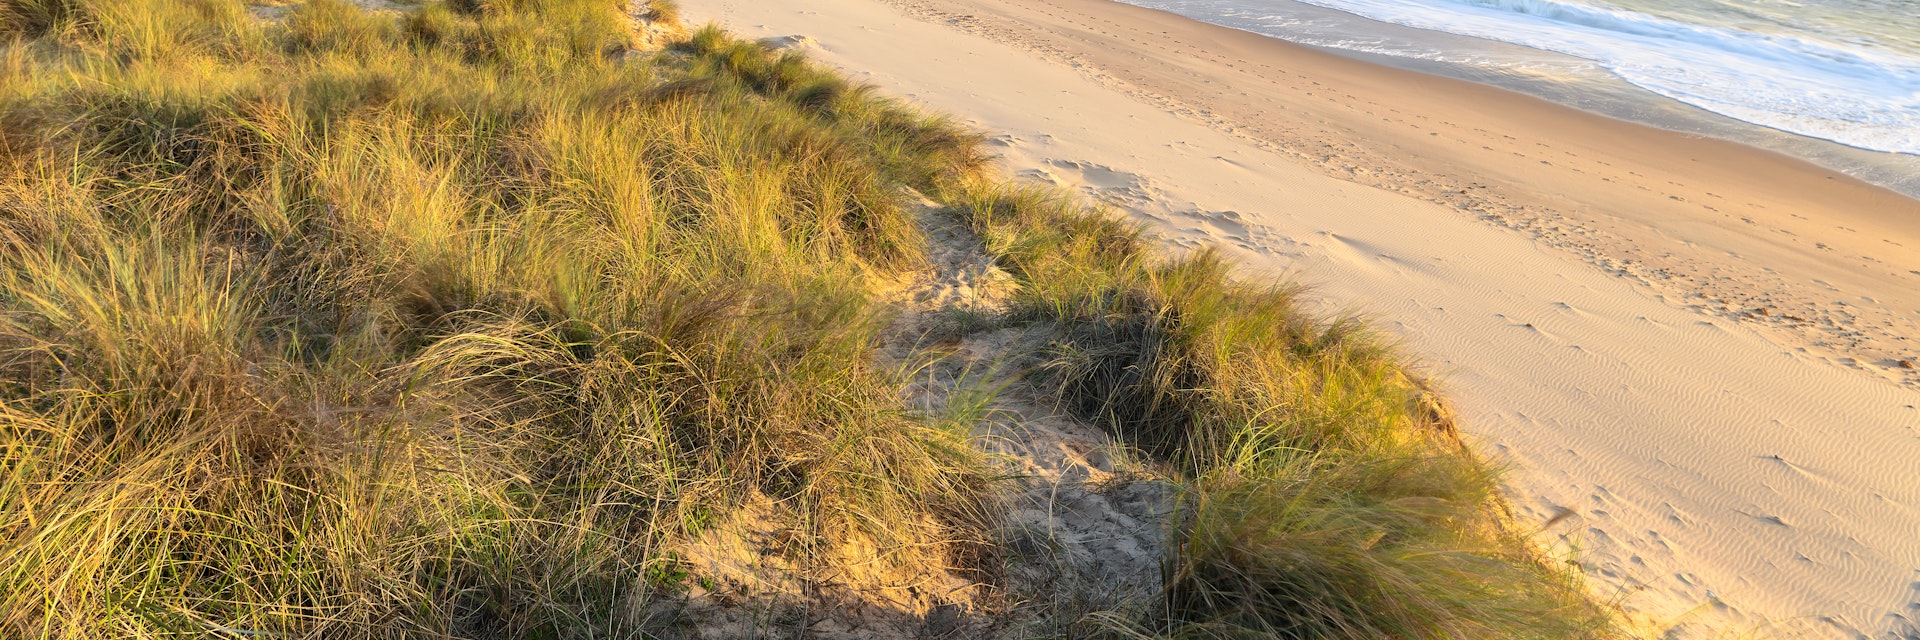 Early morning sunshine illuminates the sand dunes and marram grass on the coast at Winterton on Sea.
